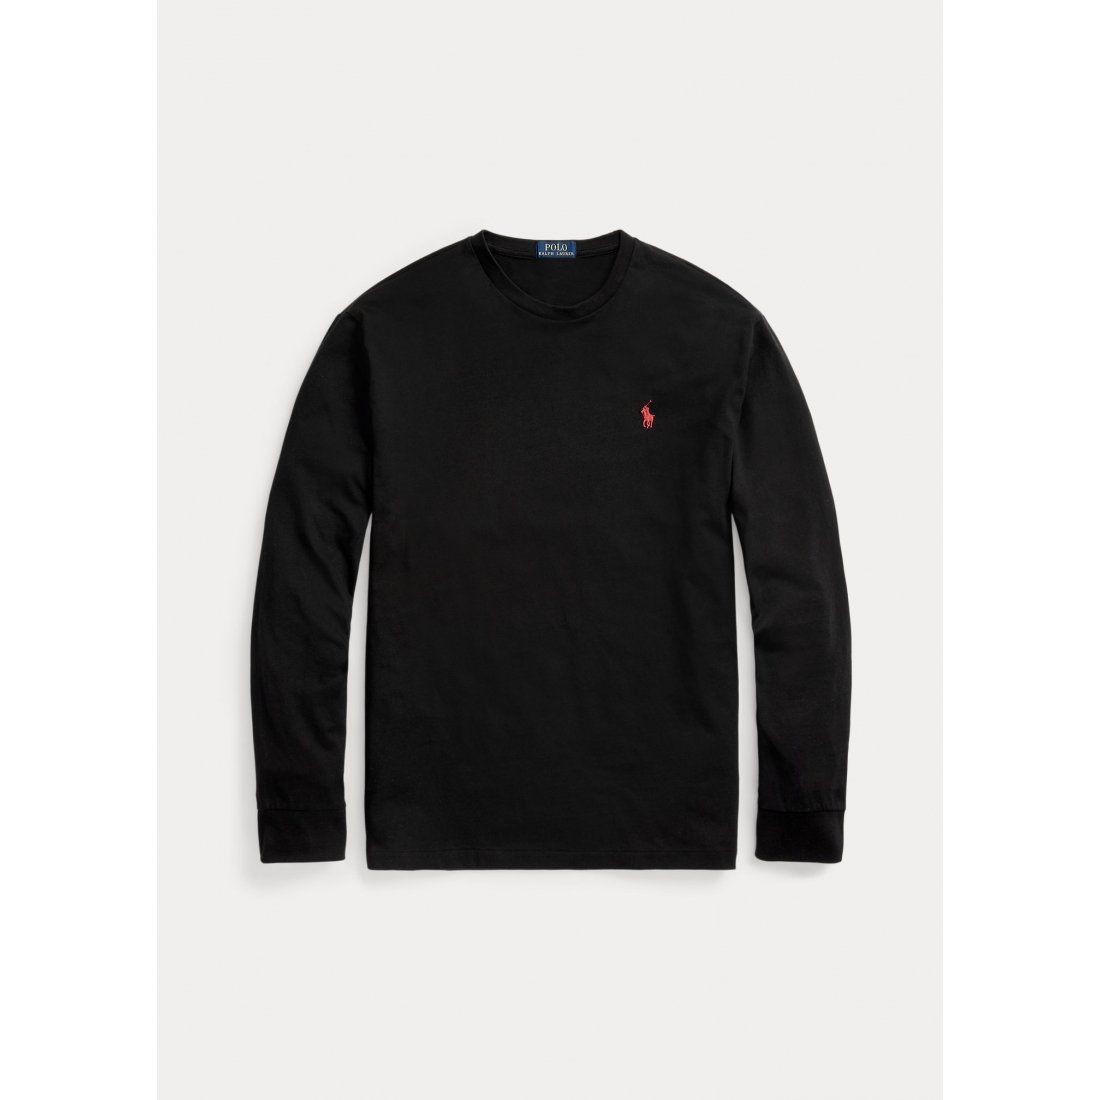 Polo Ralph Lauren - T-Shirt manches longues 'Logo' pour Hommes